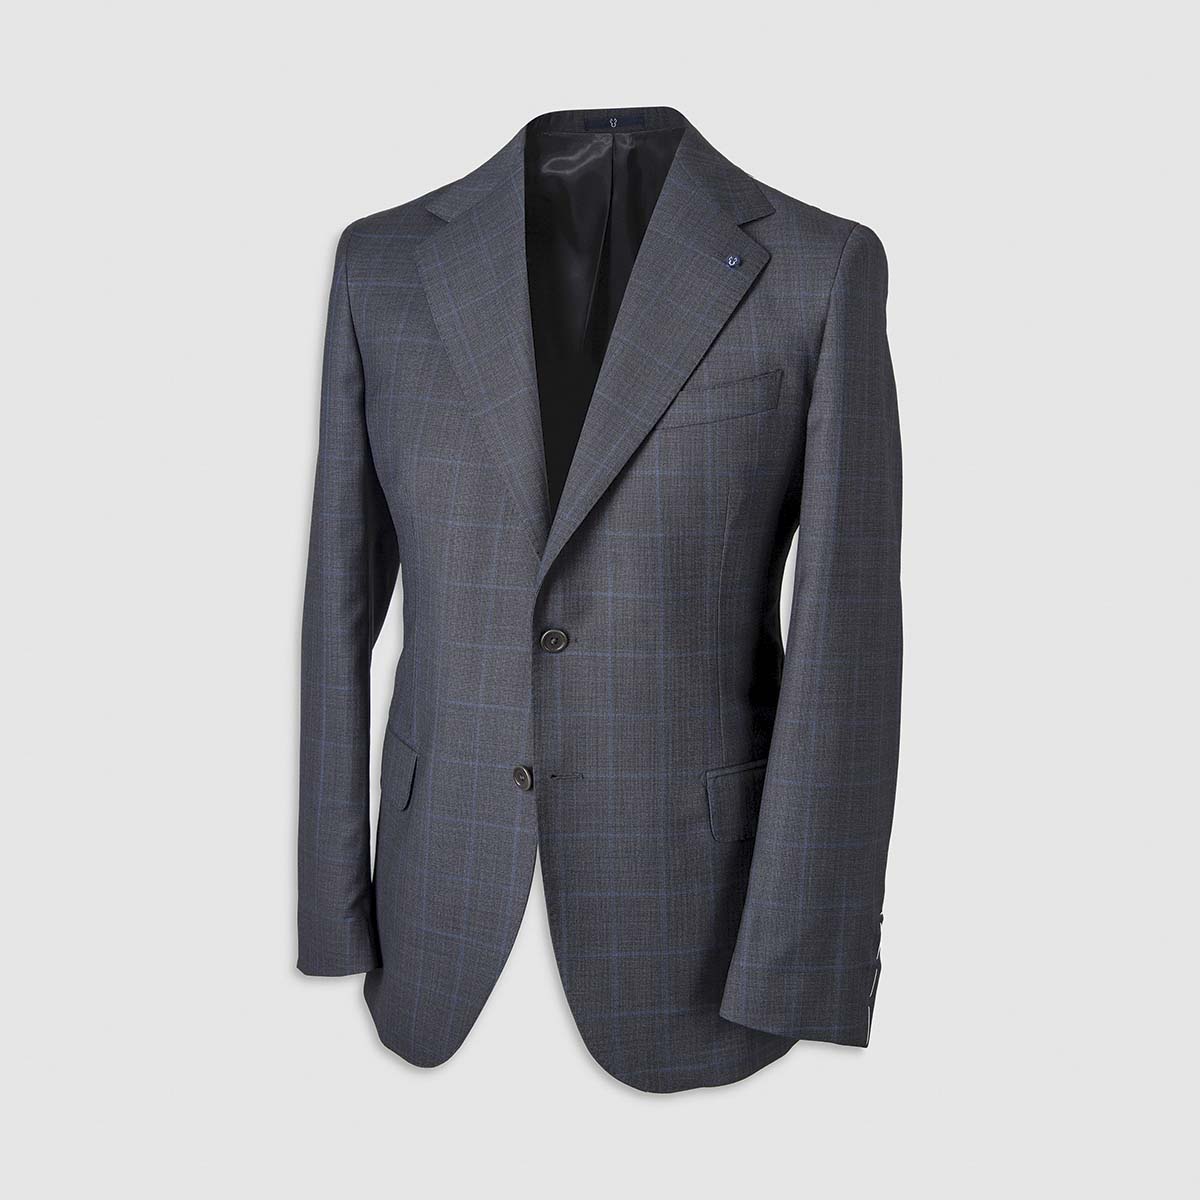 Dark Grey Windowpane Pattern Smart Suit in 130s  Four Seasons Wool Melillo 1970 on sale 2022 2